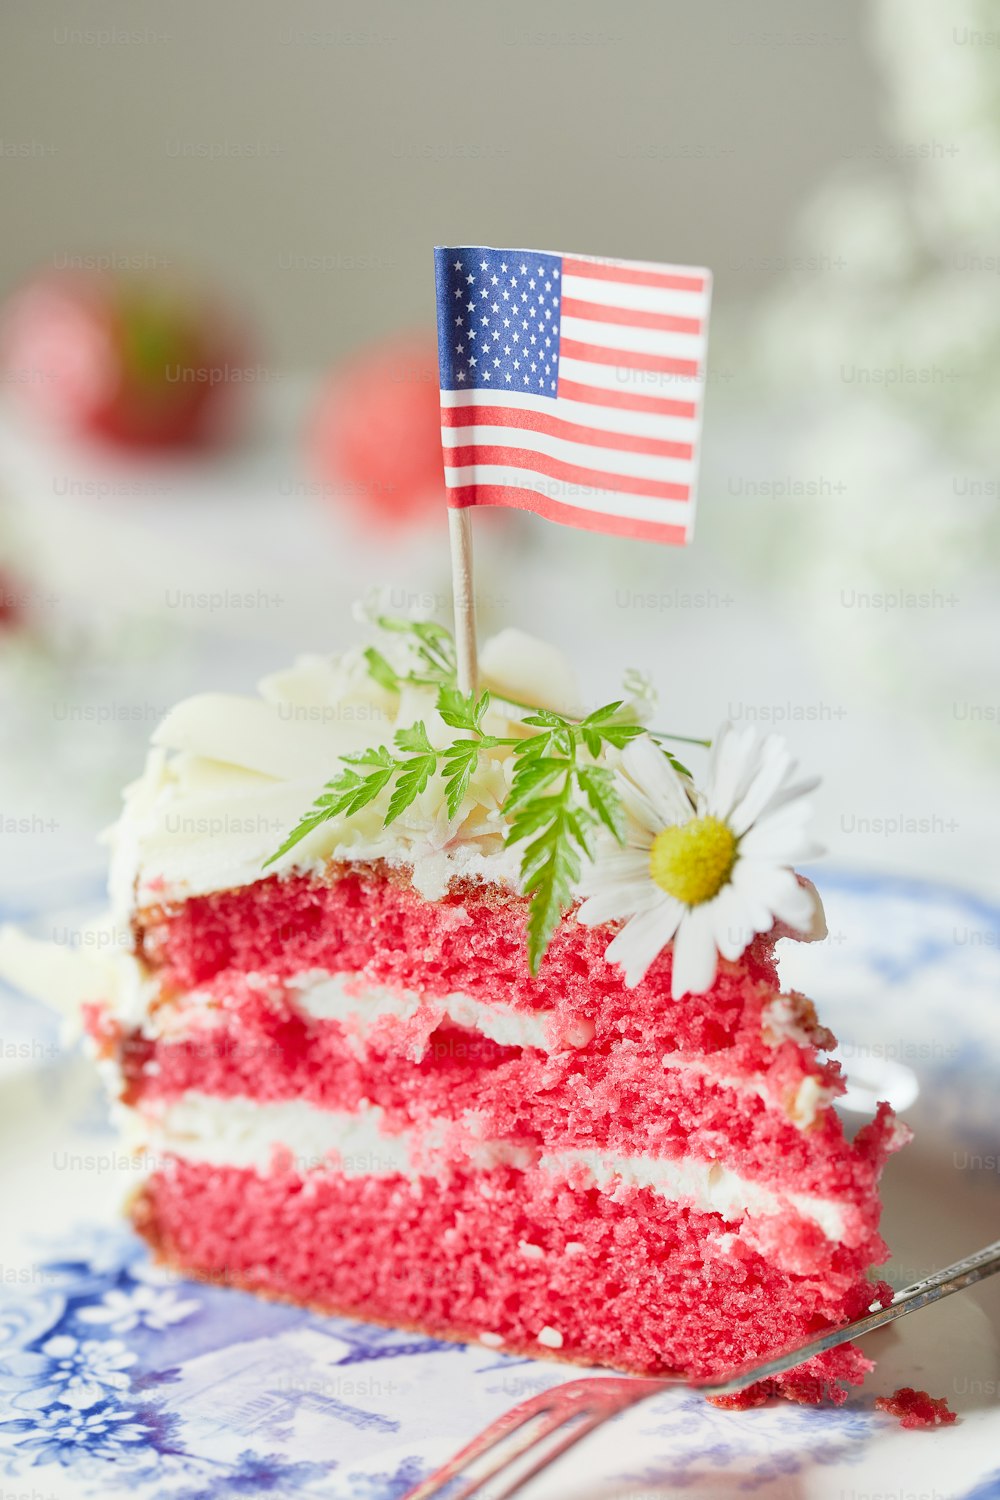 Un pedazo de pastel con una bandera encima